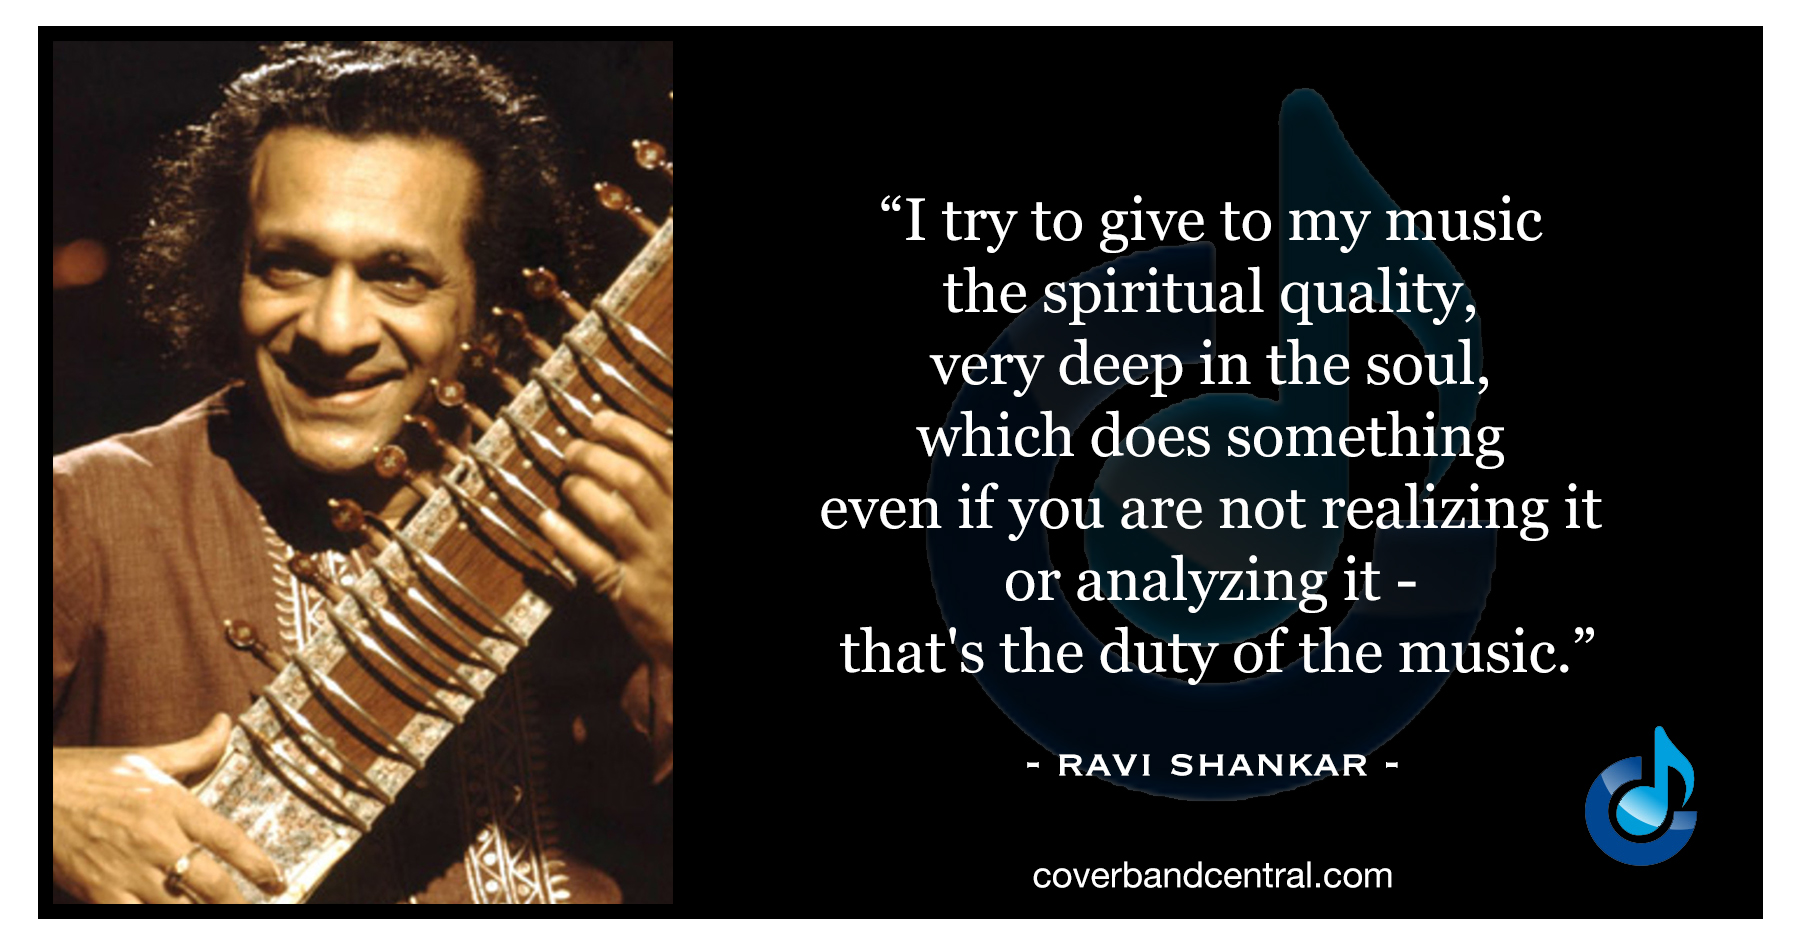 Ravi Shankar quote